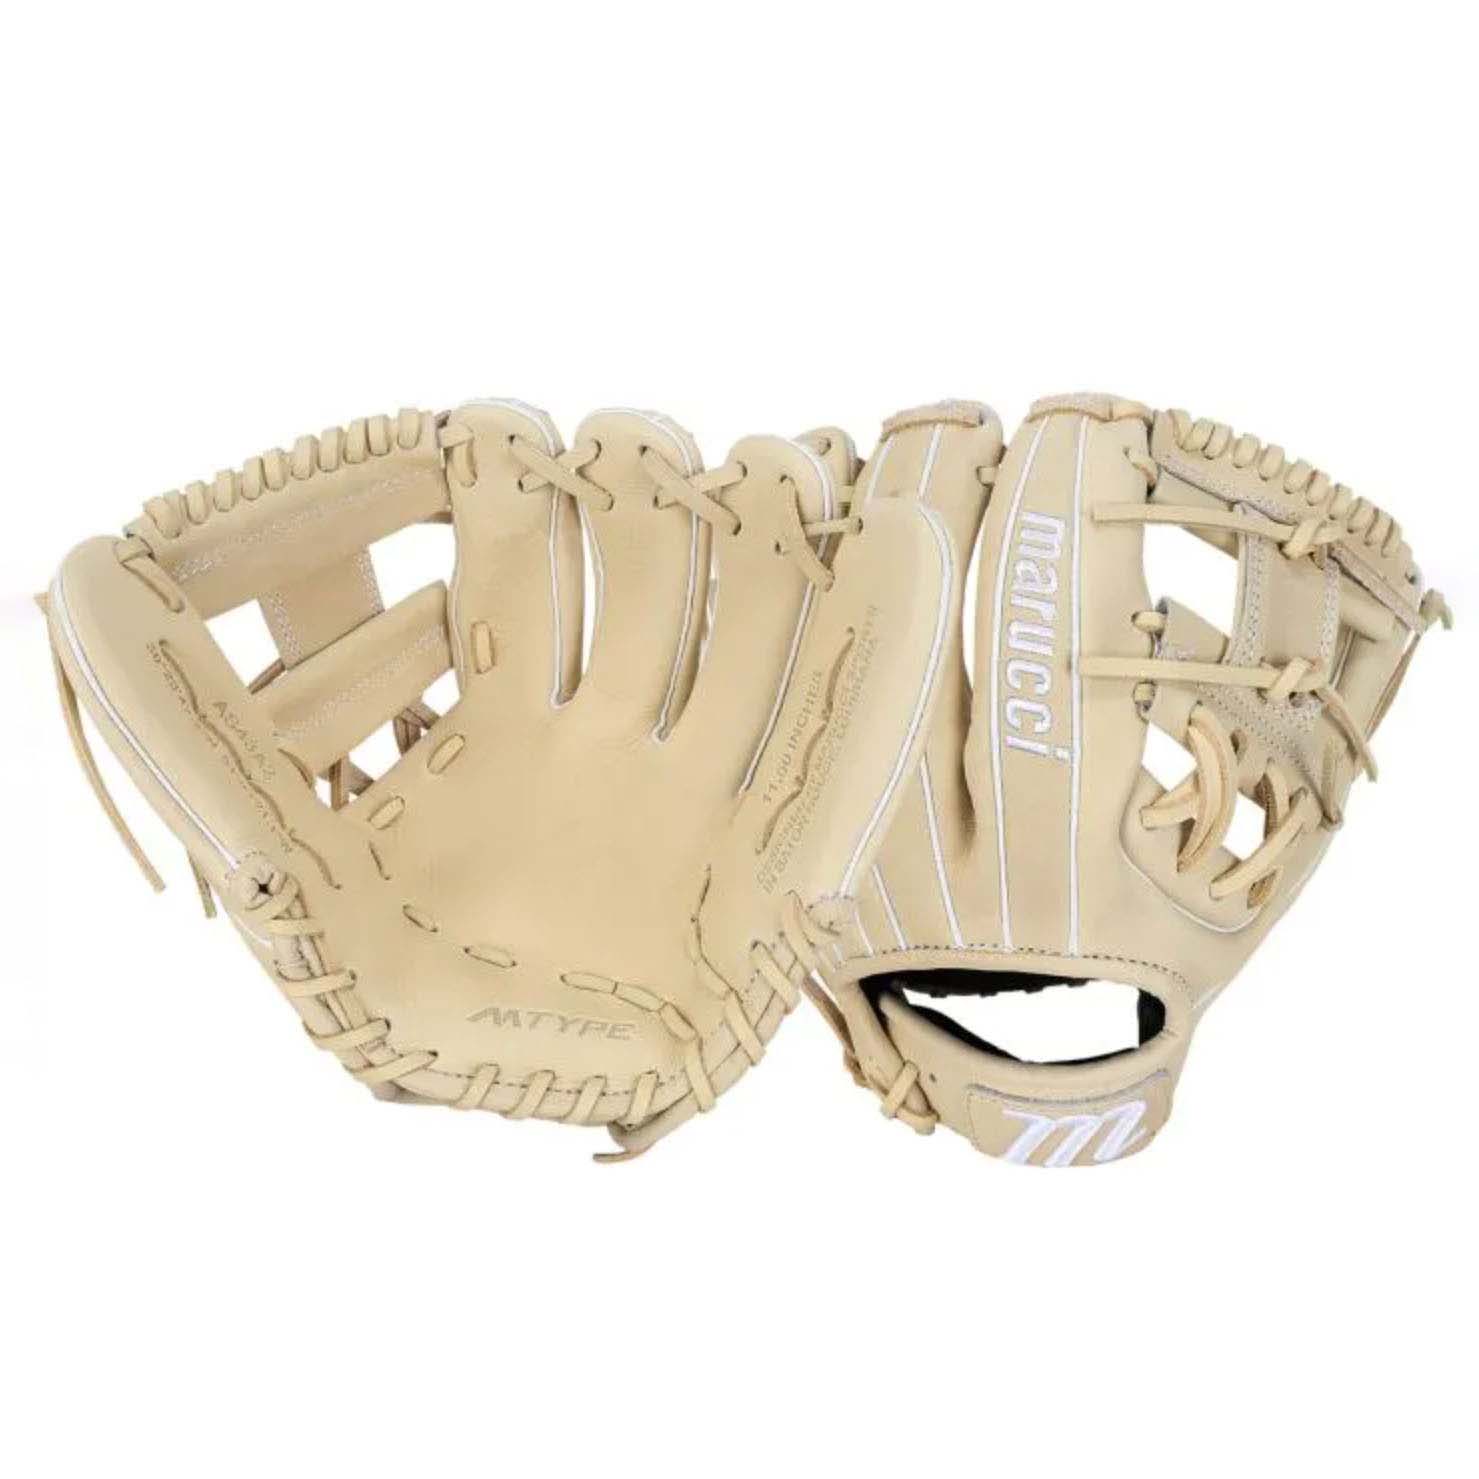 Marucci baseball gloves in cream